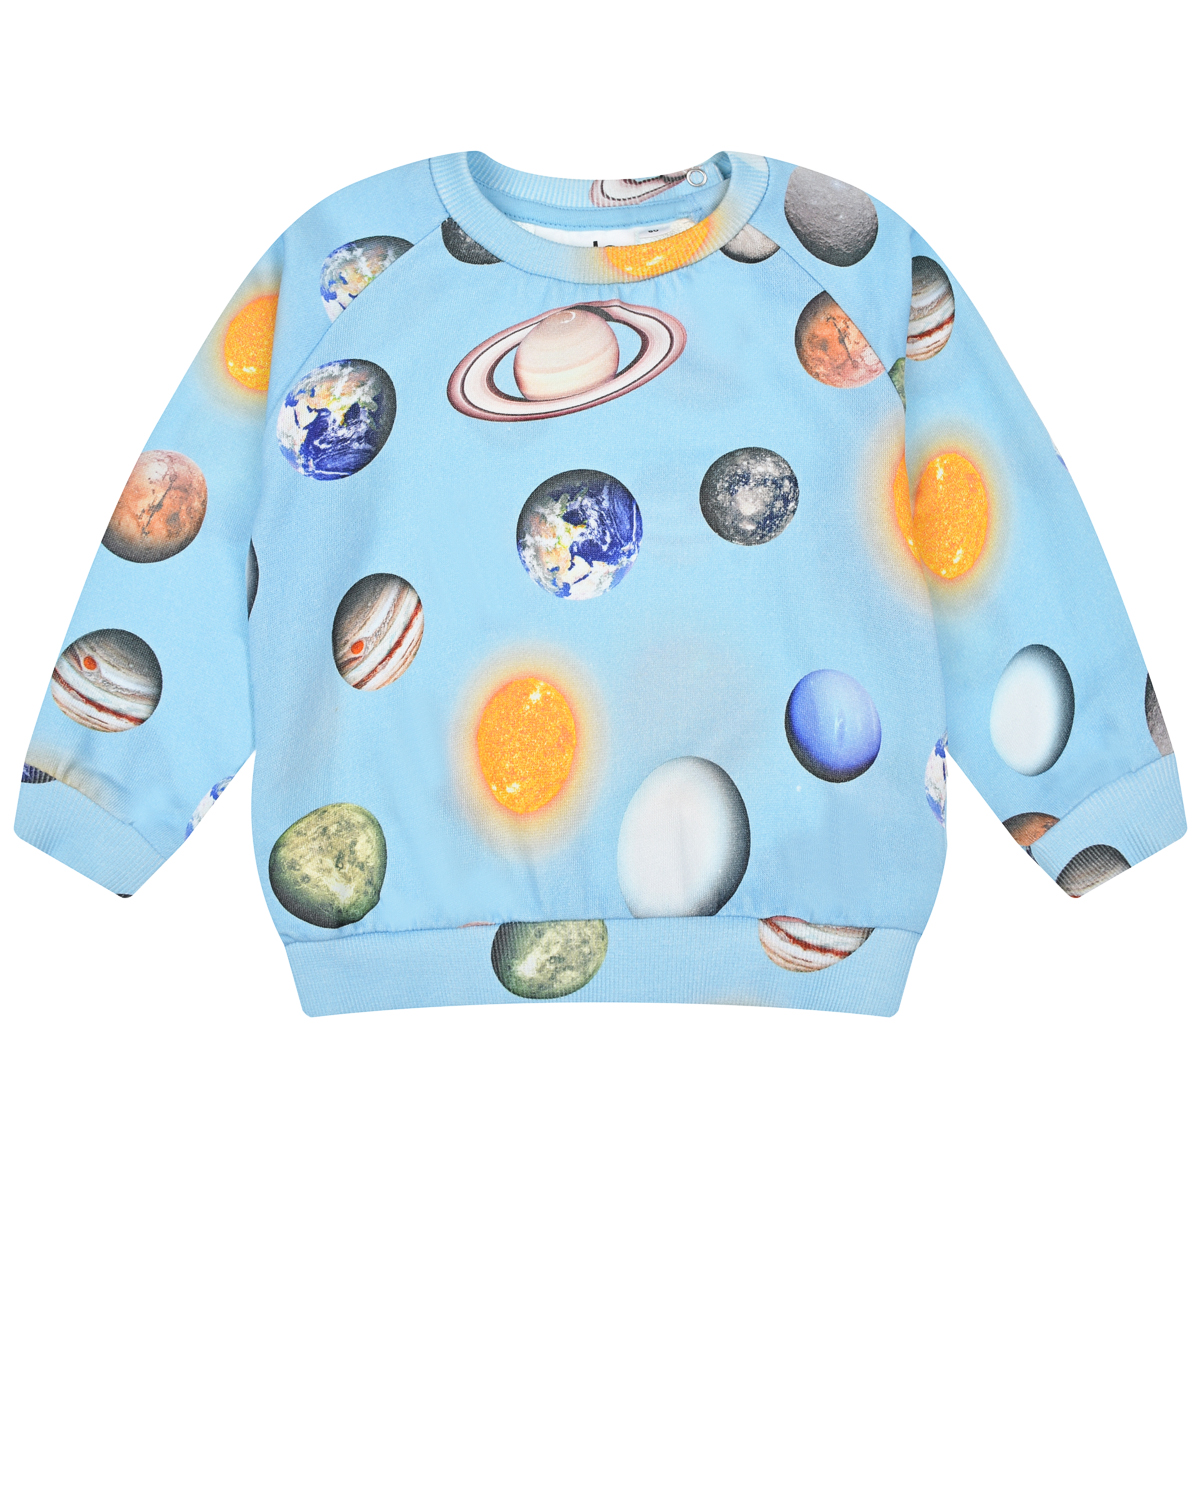 Голубой свитшот с принтом "планеты" Molo детский, размер 80, цвет мультиколор - фото 1